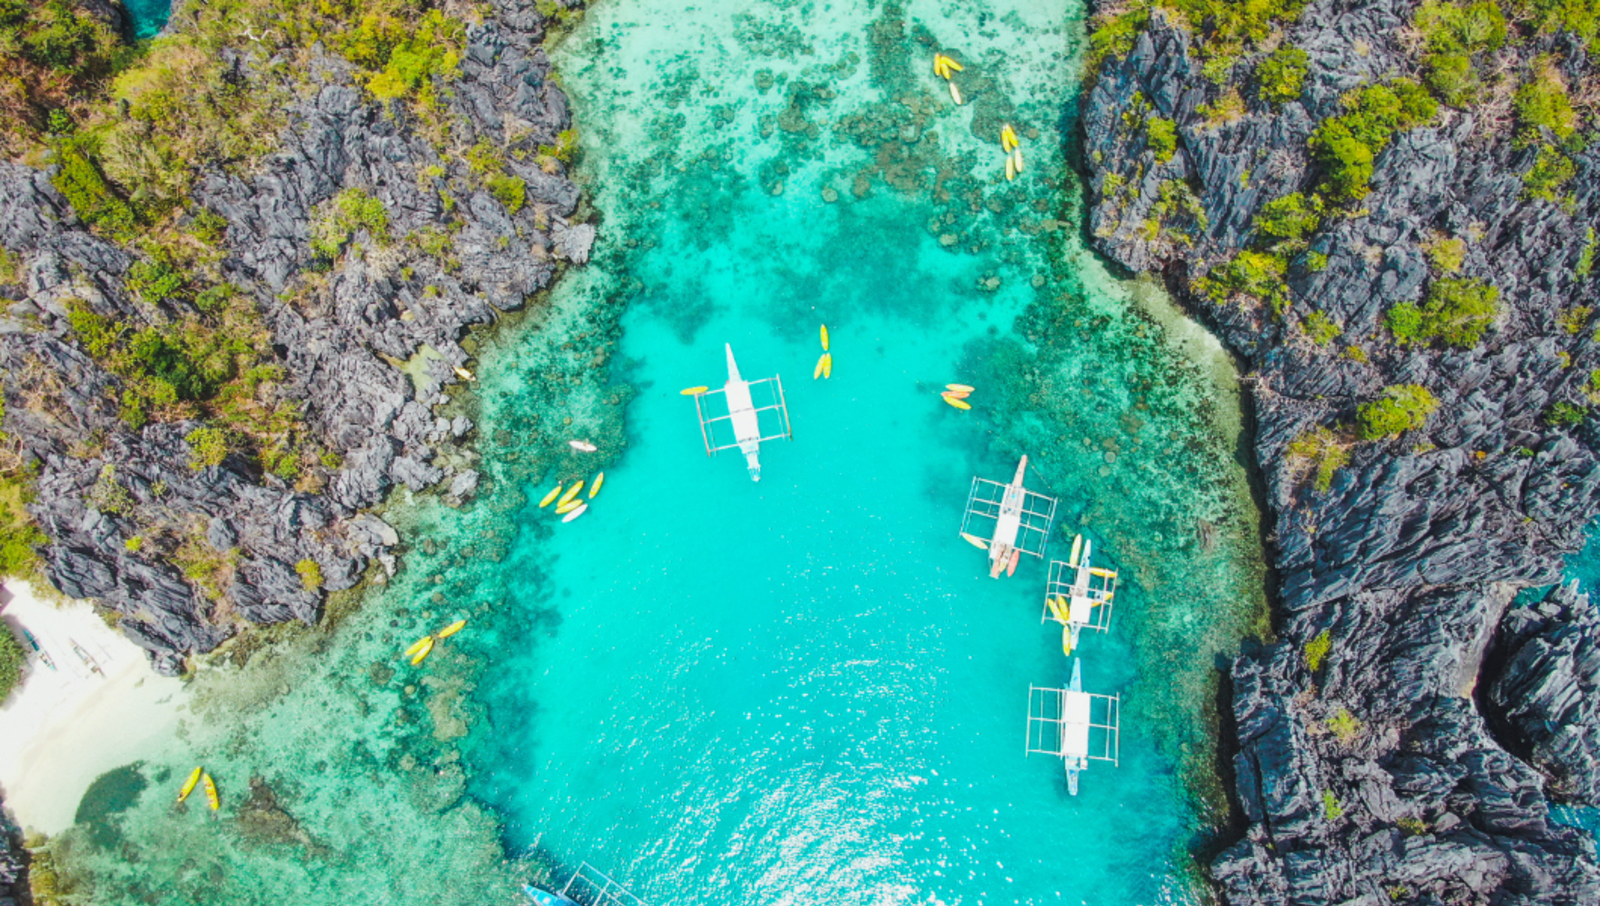 Kayaks in the crystal blue waters in El Nido Philippines between cliffs